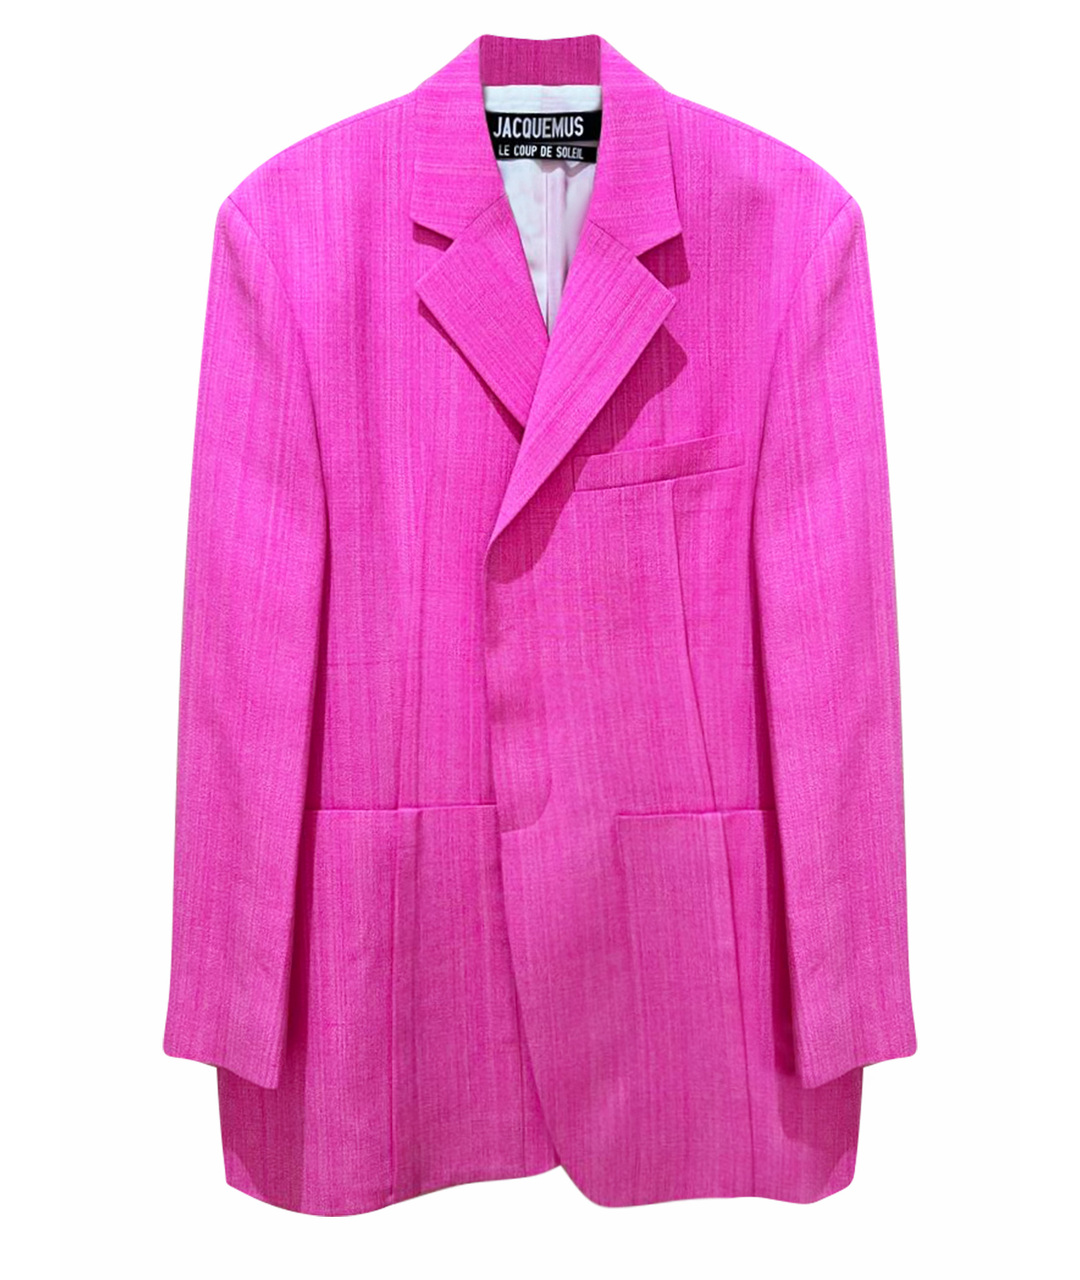 JACQUEMUS Розовый шелковый жакет/пиджак, фото 1